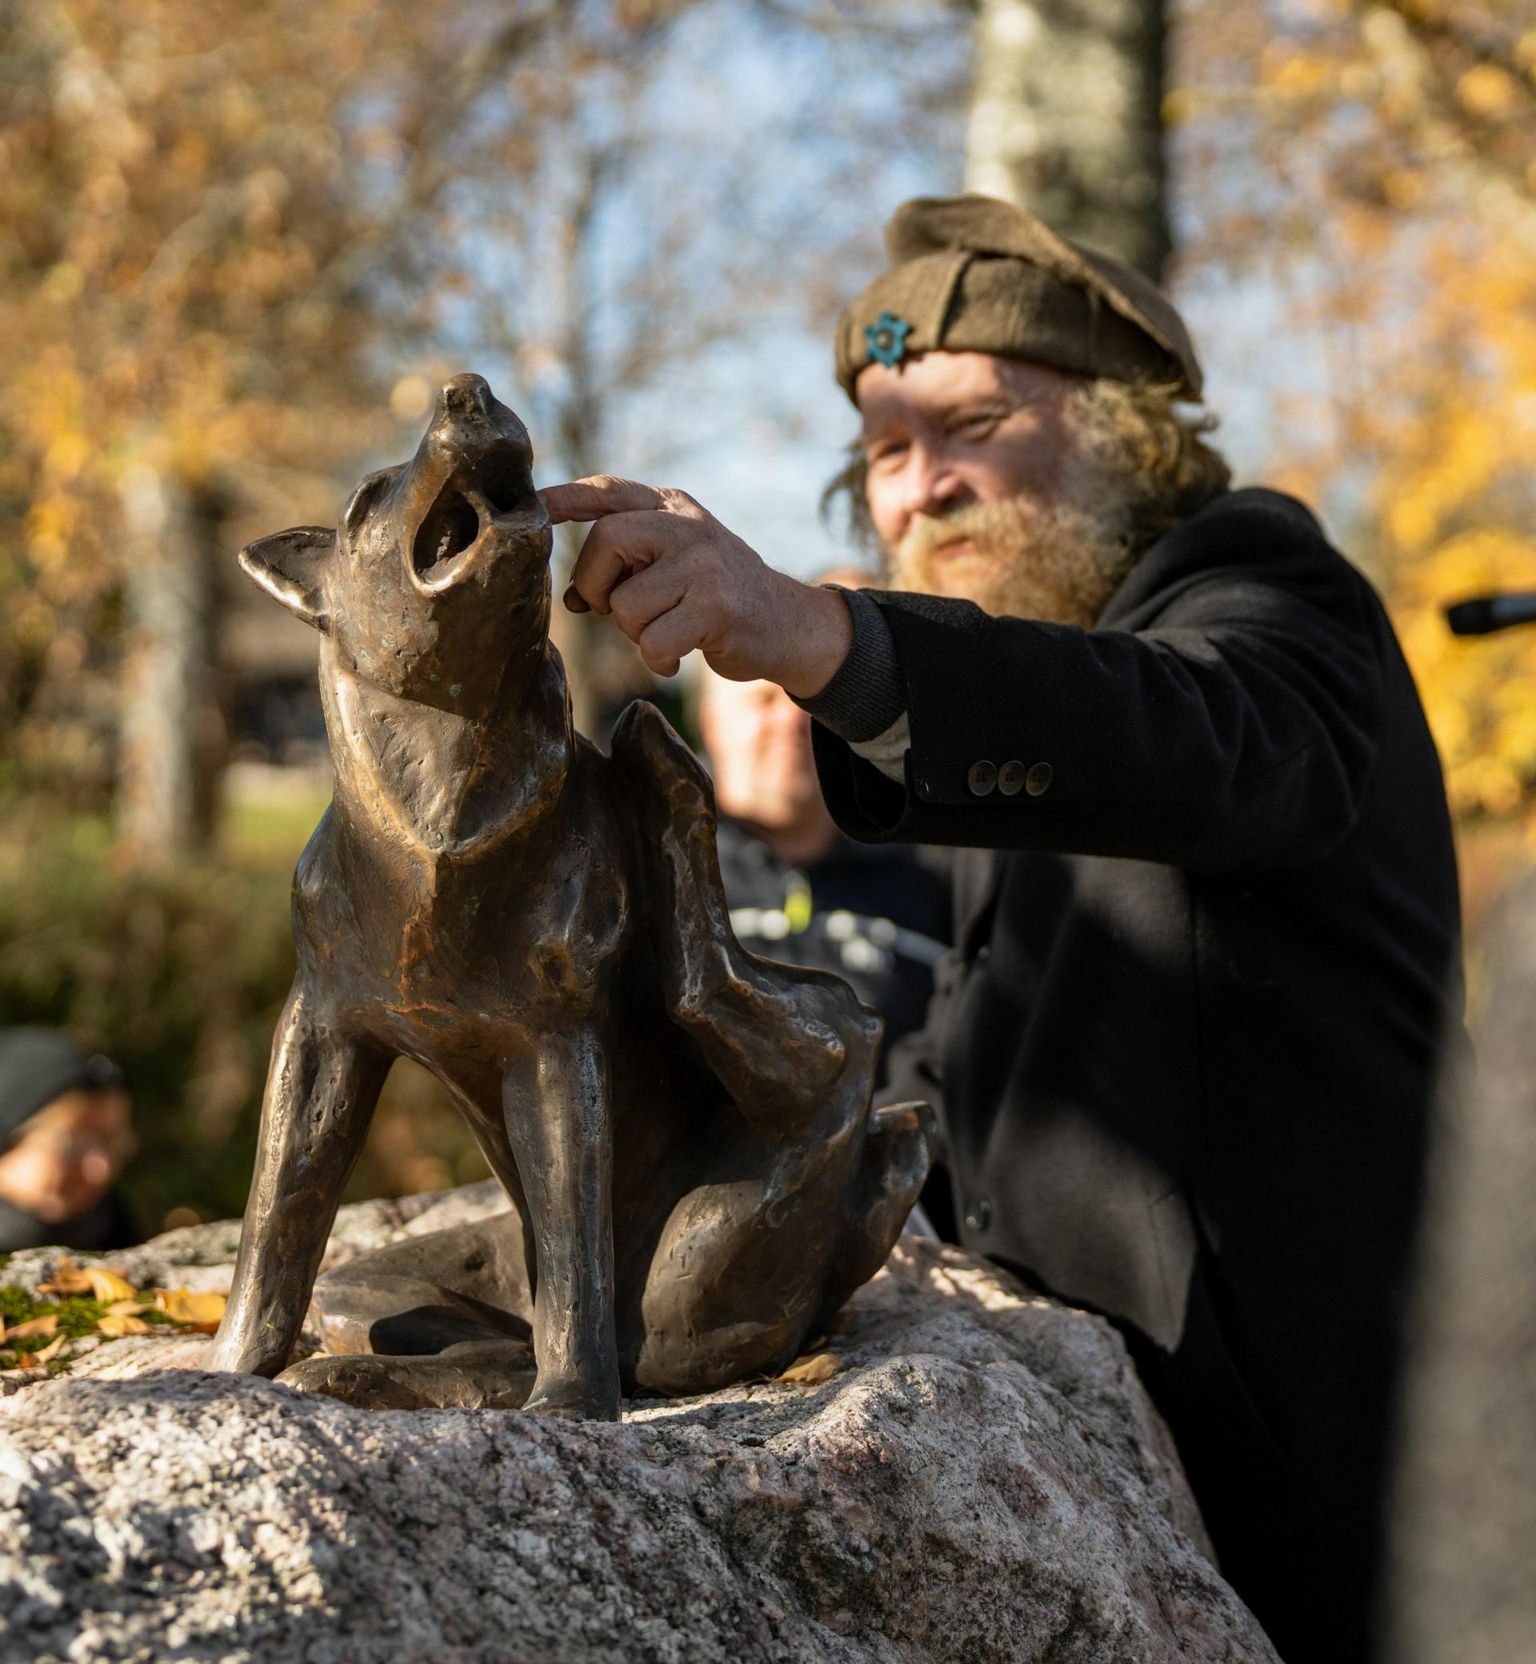 Pulli kiviaja asulakohas on nüüdsest pirakatel kividel infotahvlid paiga ajaloo kohta ja pronksist koer, mille juures tehti täna sadu endleid.